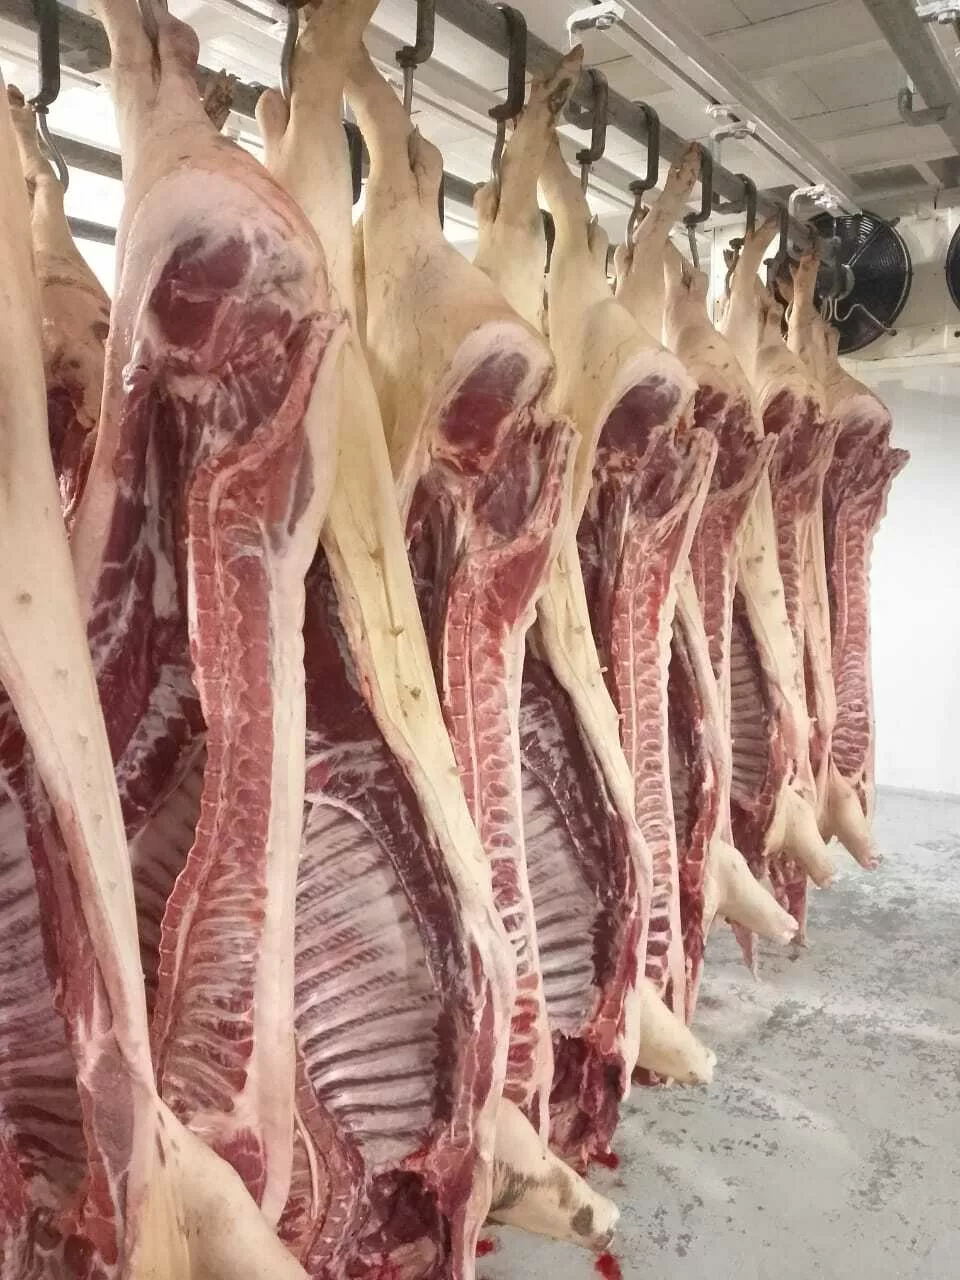 мясо свинины оптом и в розницу в Краснодаре и Краснодарском крае 3